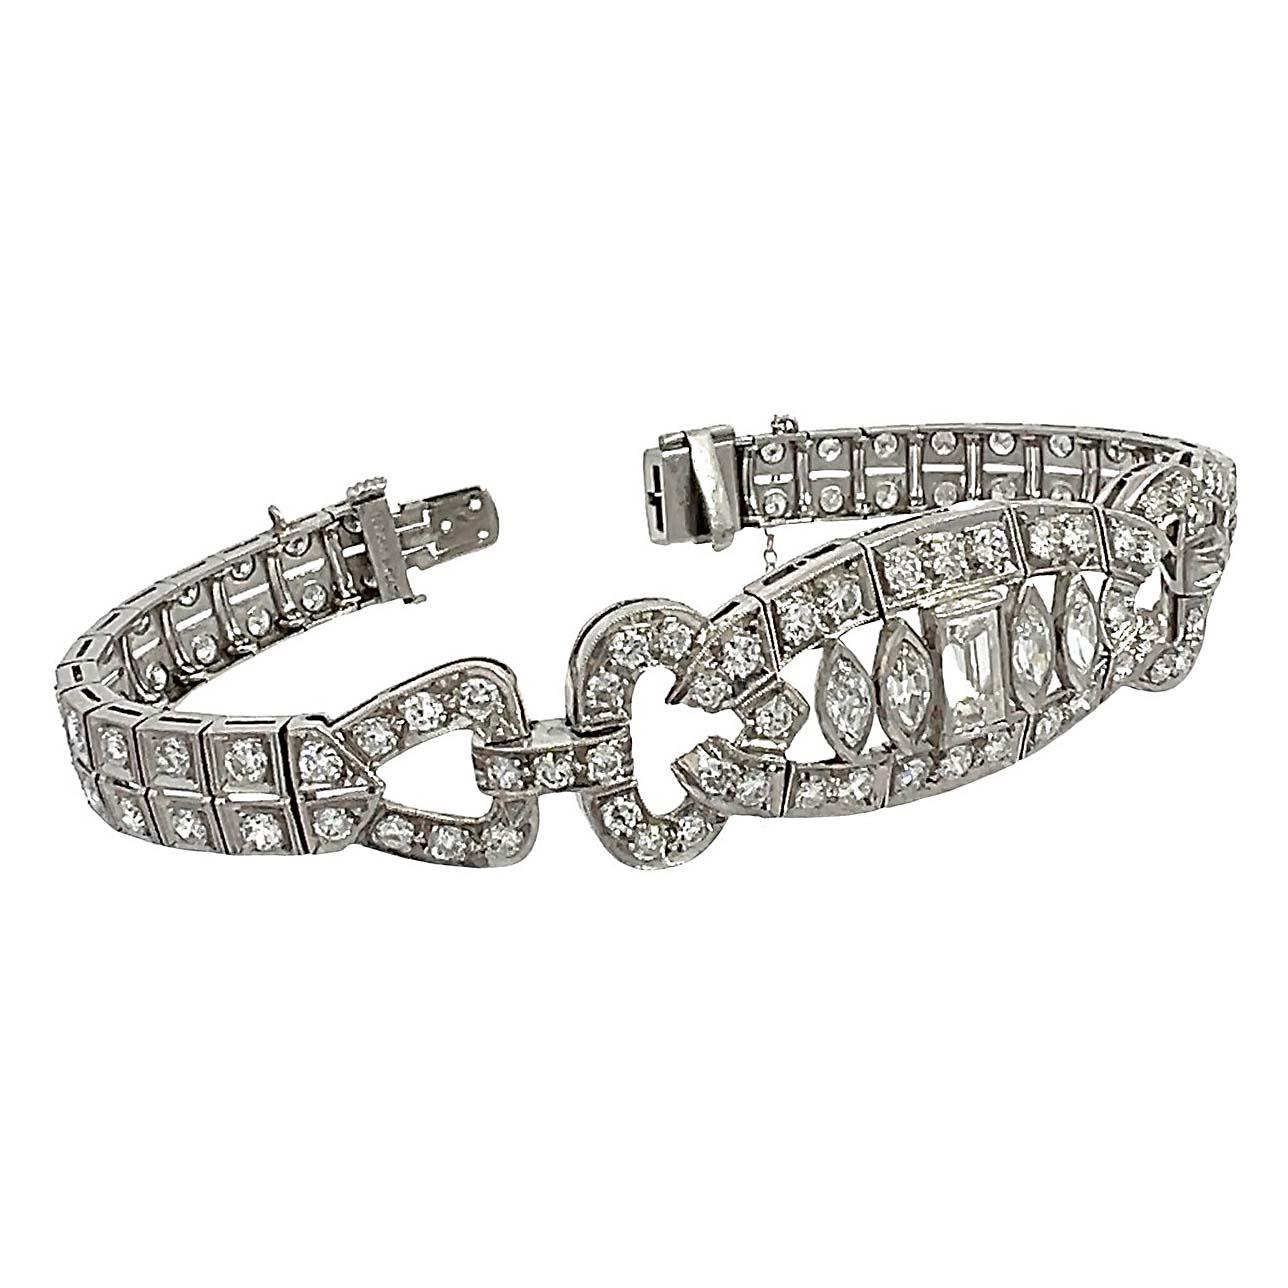 Bracelet antique Art Deco en diamant méticuleusement réalisé avec 4,5 à 5 carats de diamants européens anciens, baguette et taille marquise. Le bracelet à double rangée de diamants présente un motif central plus large composé de diamants taillés en